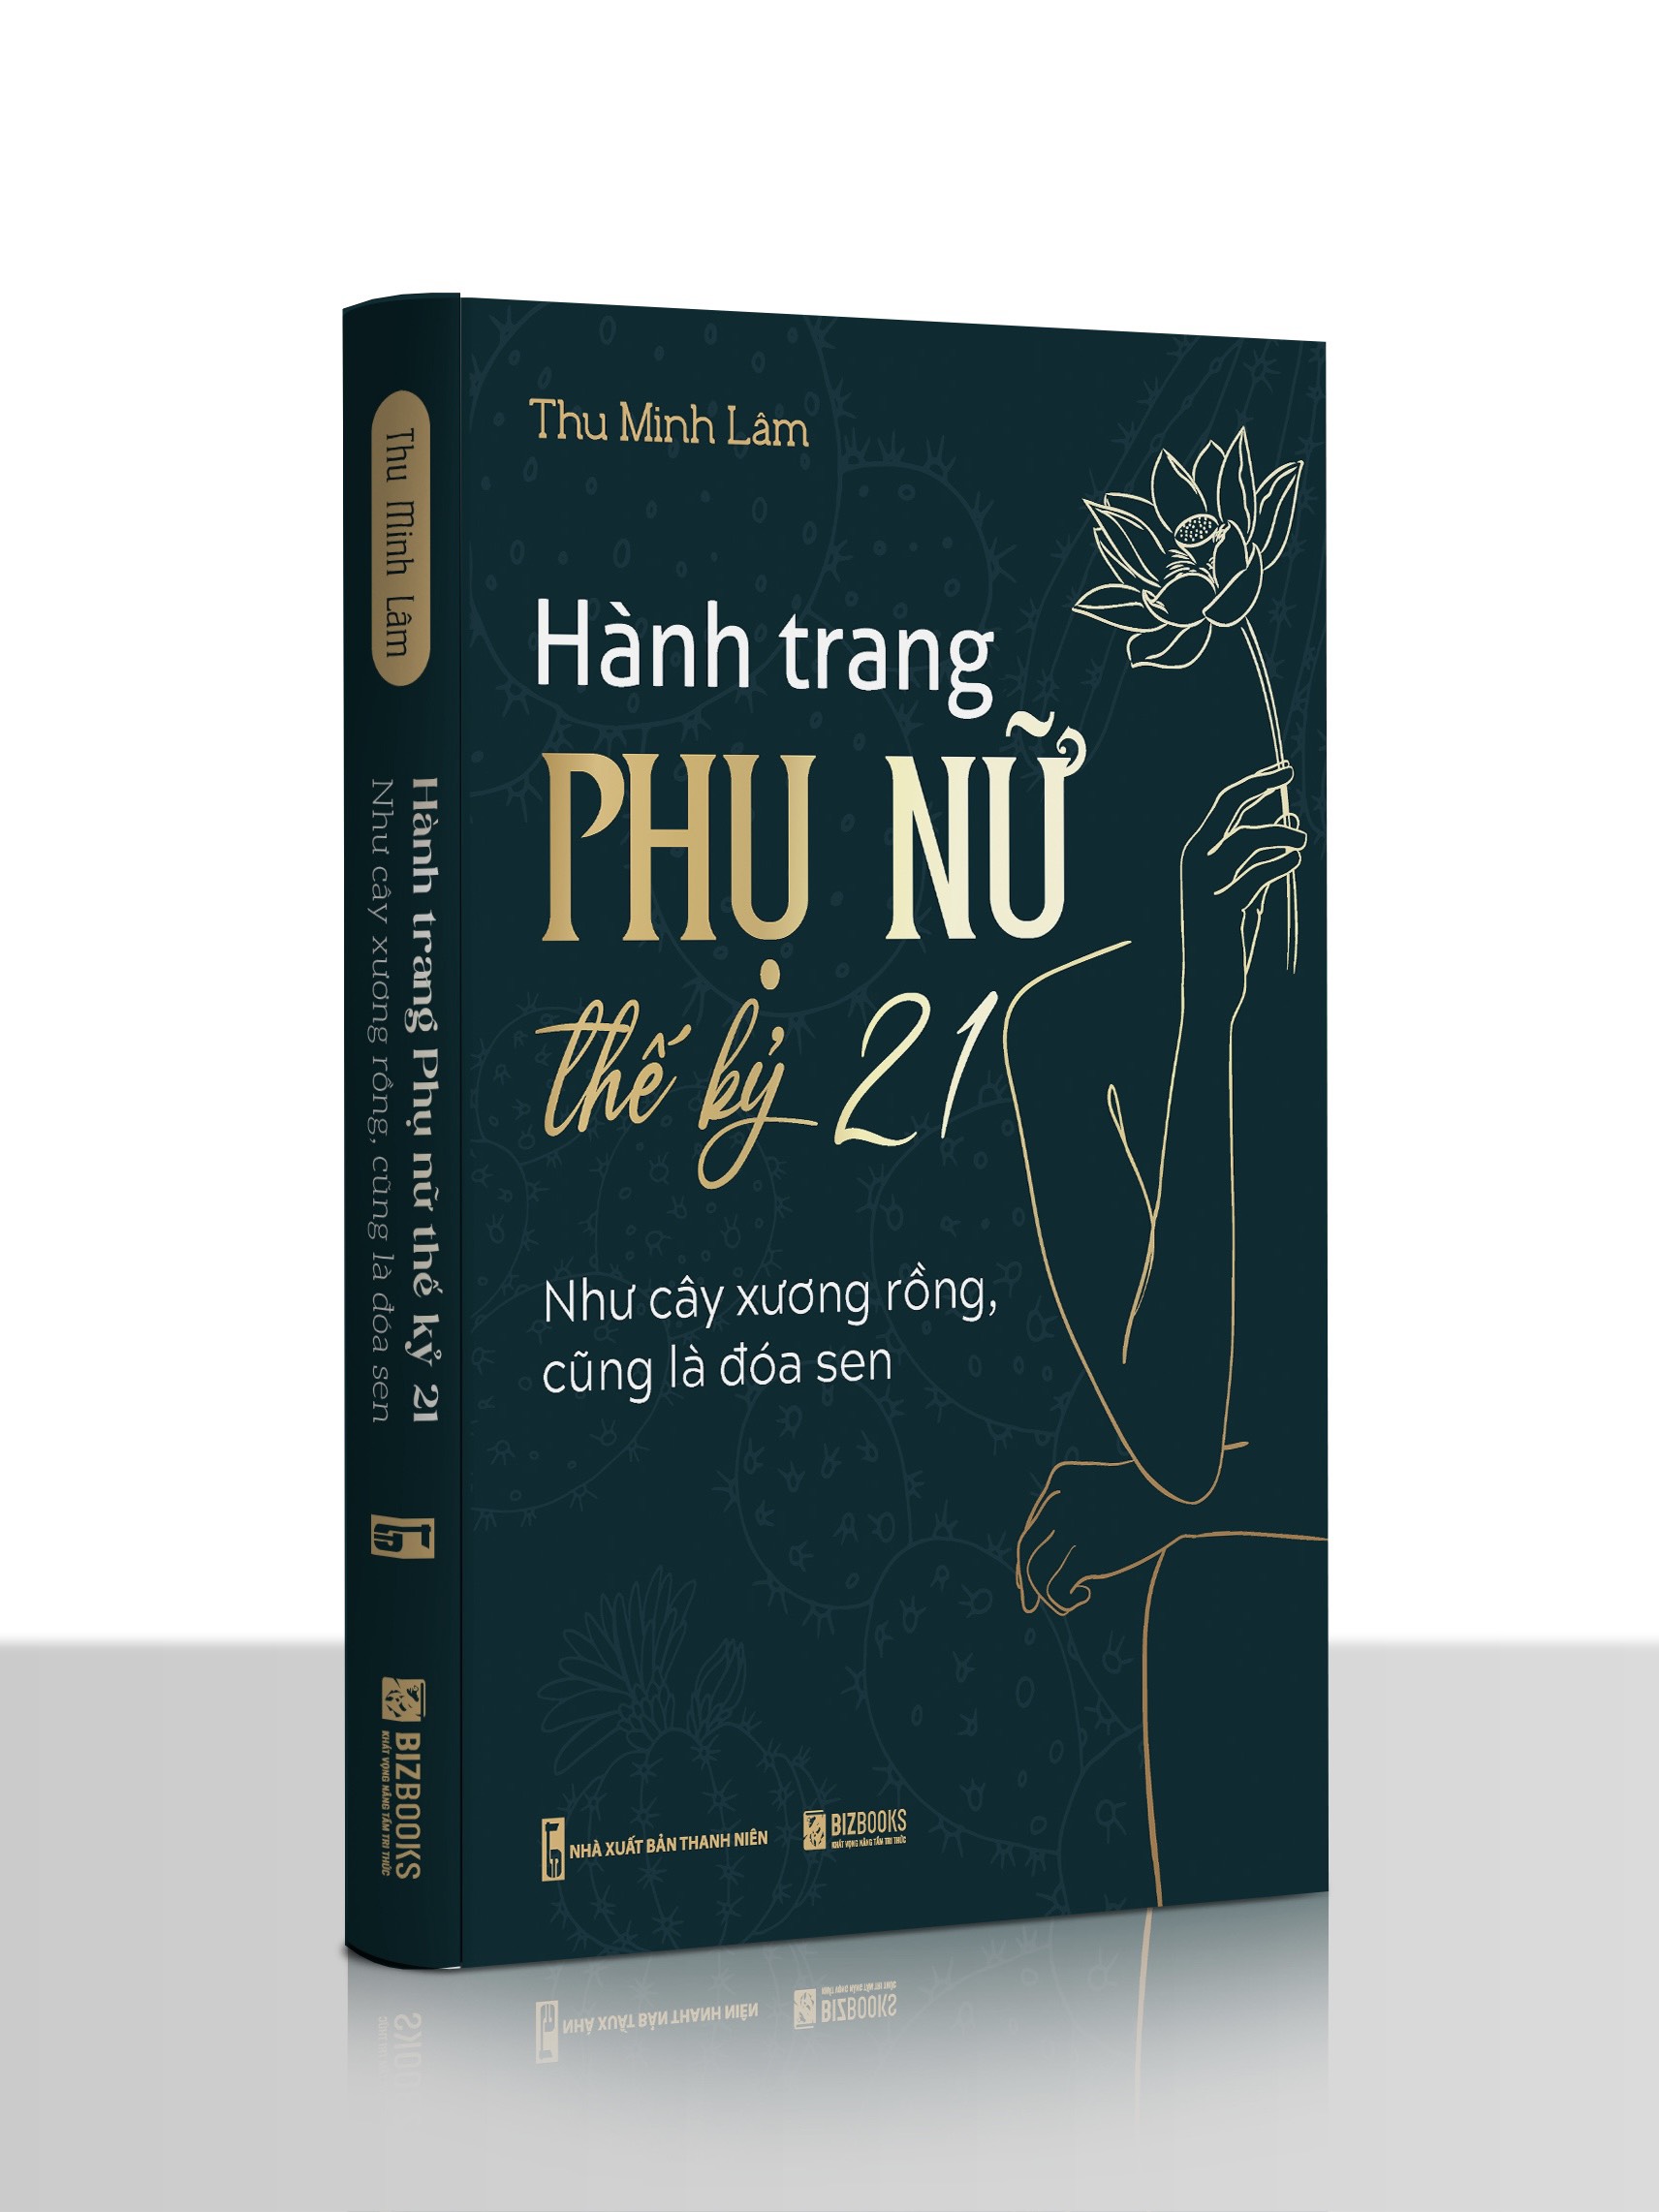 Sách Hành trang phụ nữ thế kỷ 21 - Như cây xương rồng, cũng là đóa sen của Thu Minh Lâm - nhà báo, nhà kinh doanh đã chính thức ra mắt 